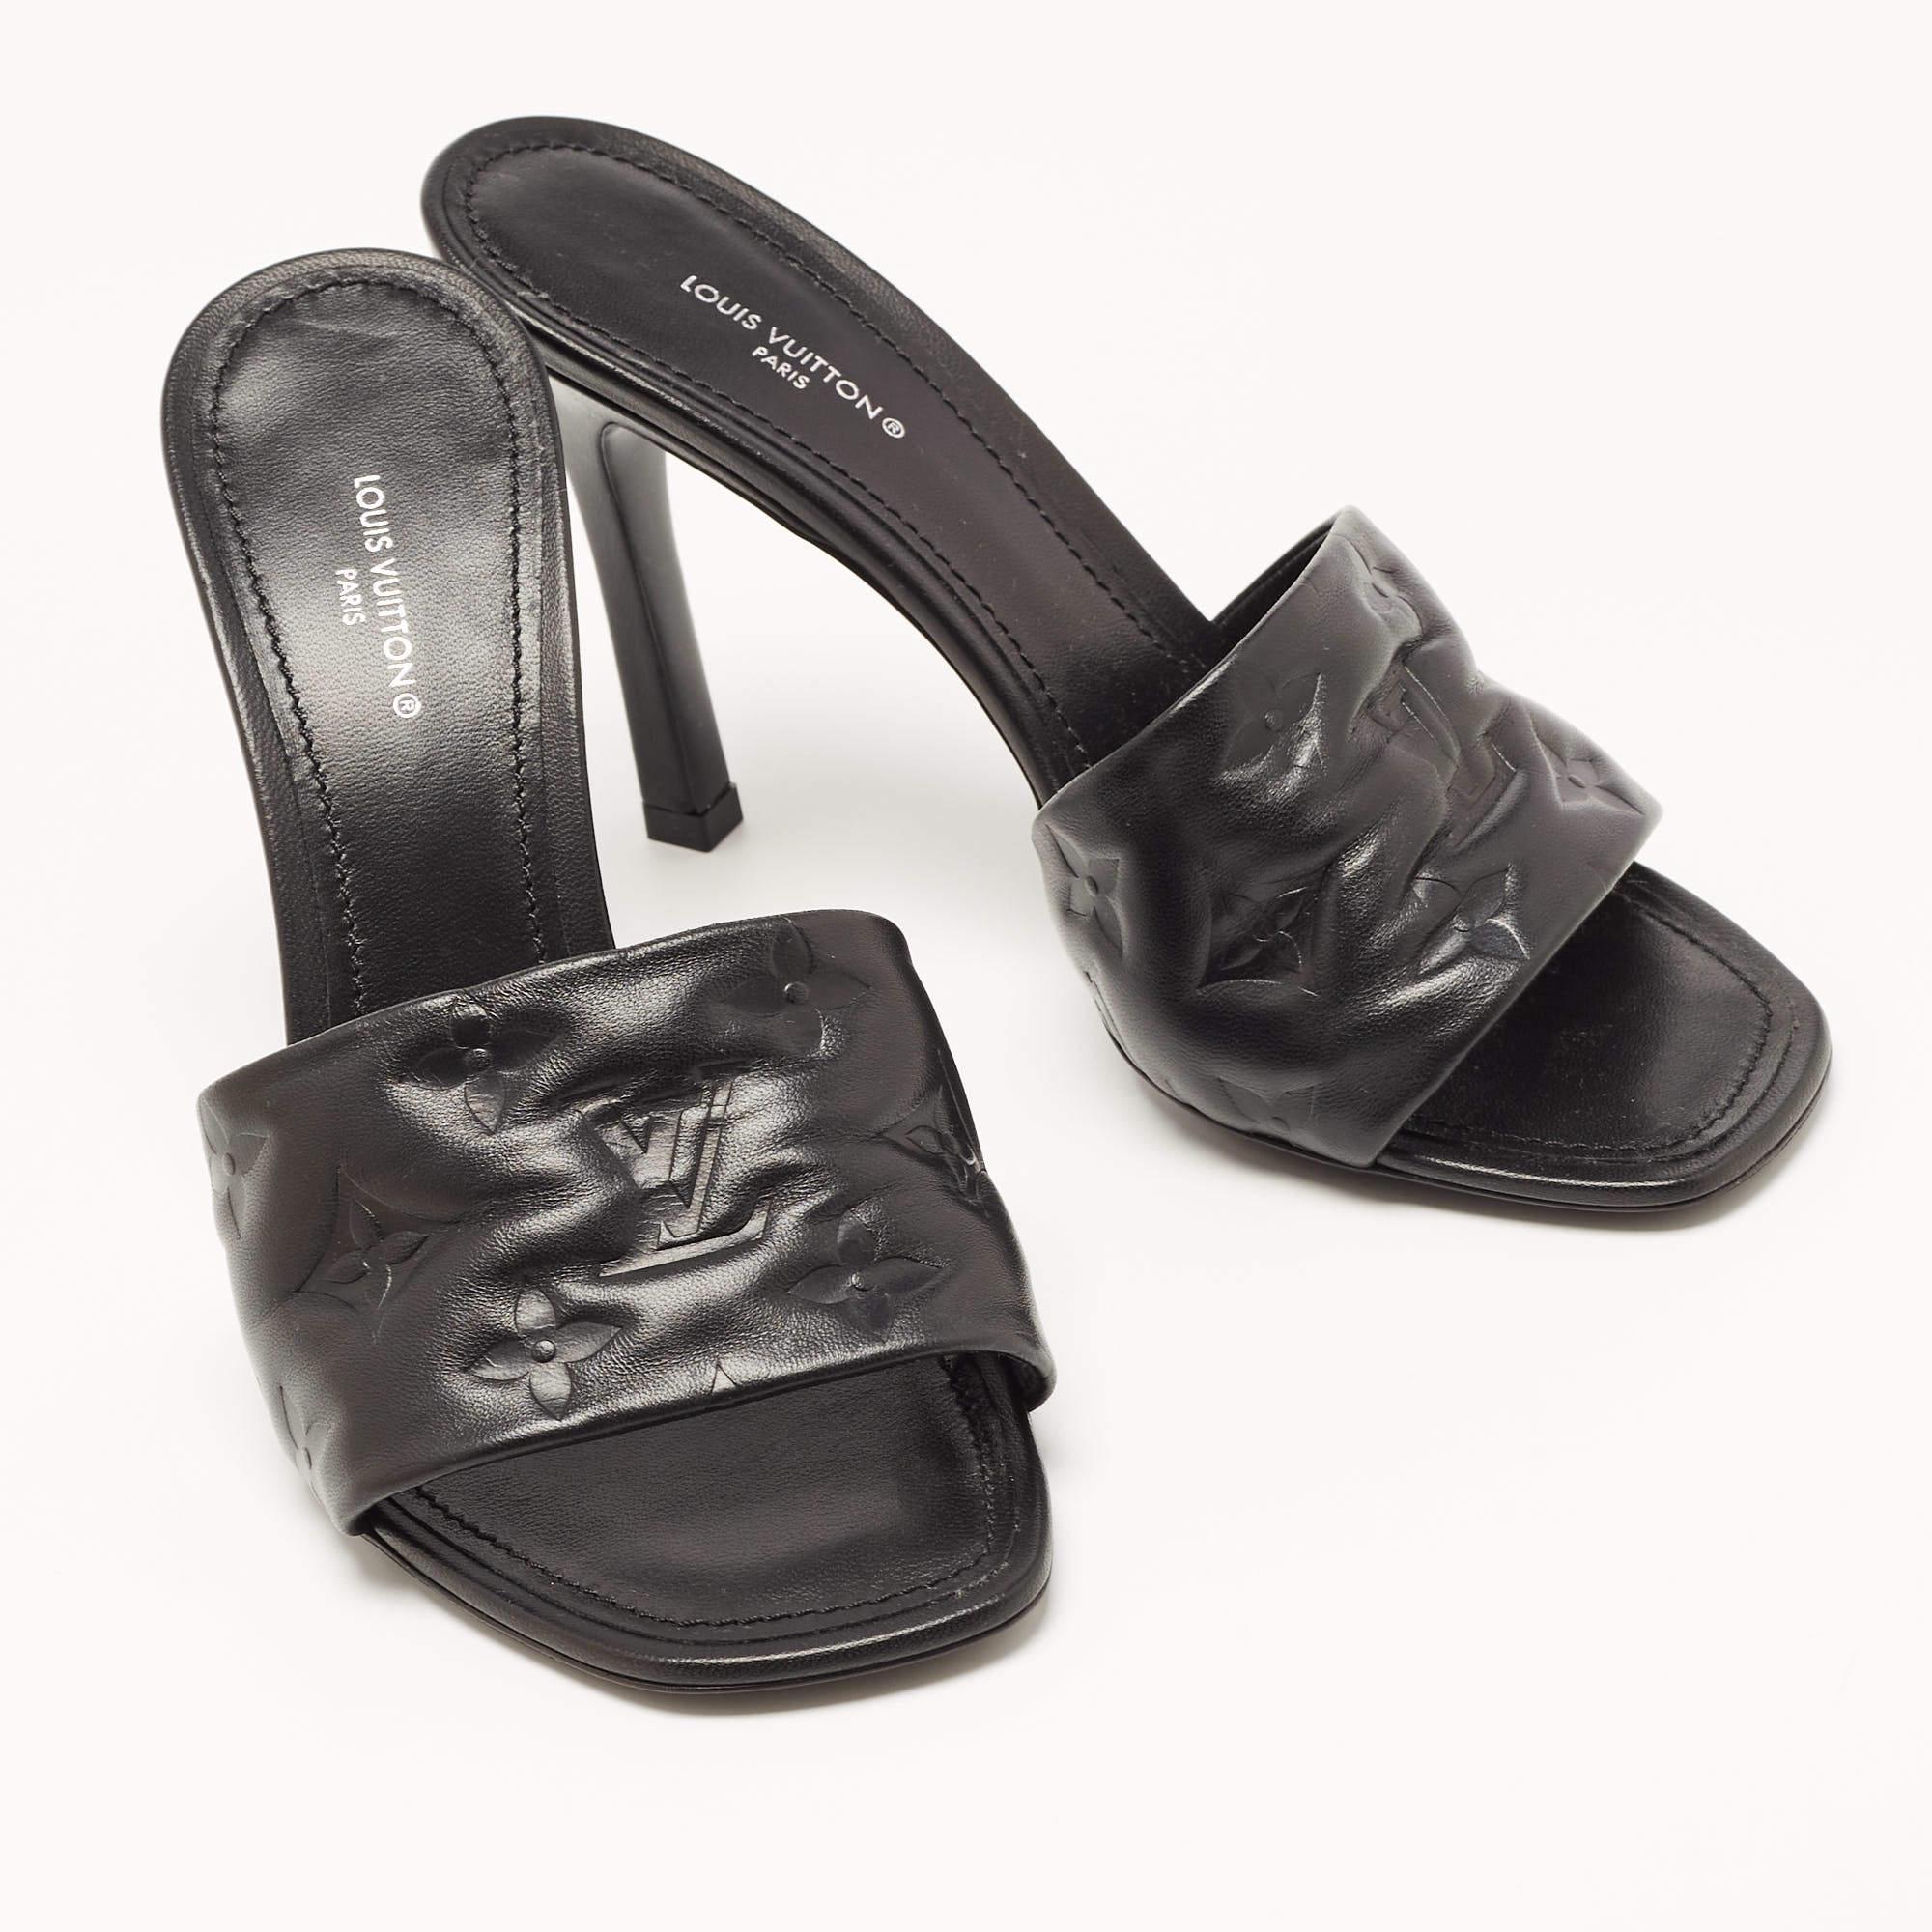 Louis Vuitton Black Leather Revival Mules Sandals Size 38 2